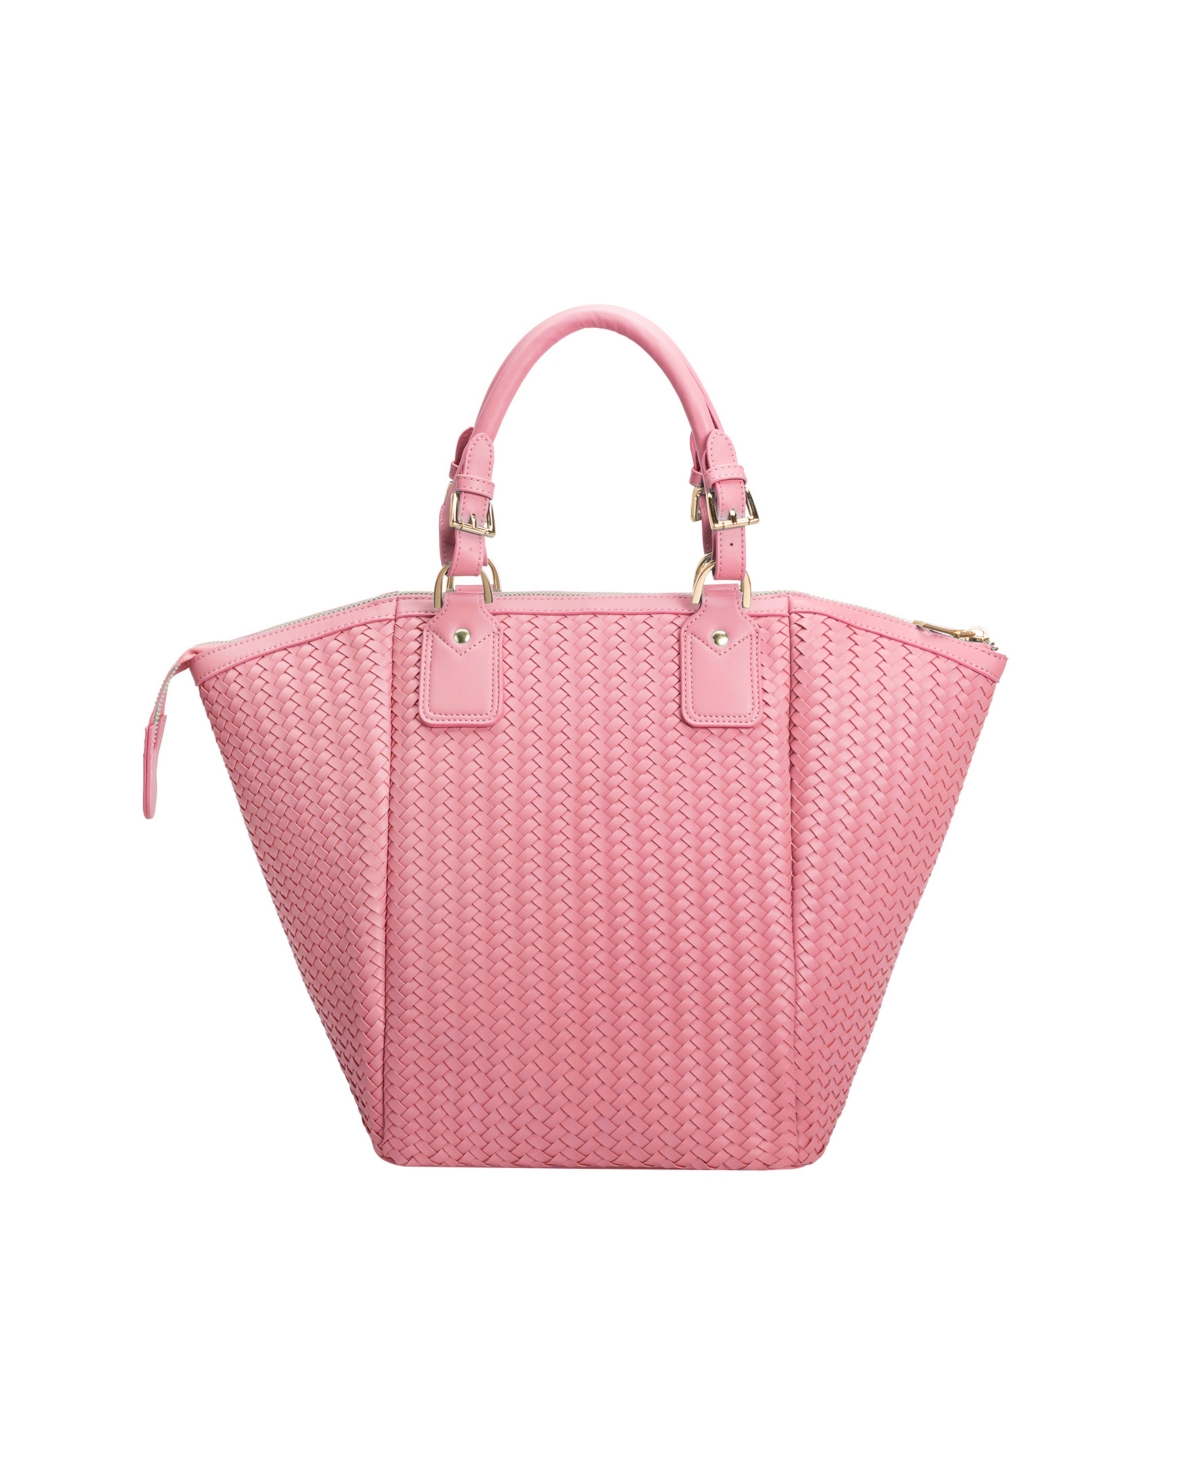 Melie Bianco Women's Valerie Top Handle Bag In Pink